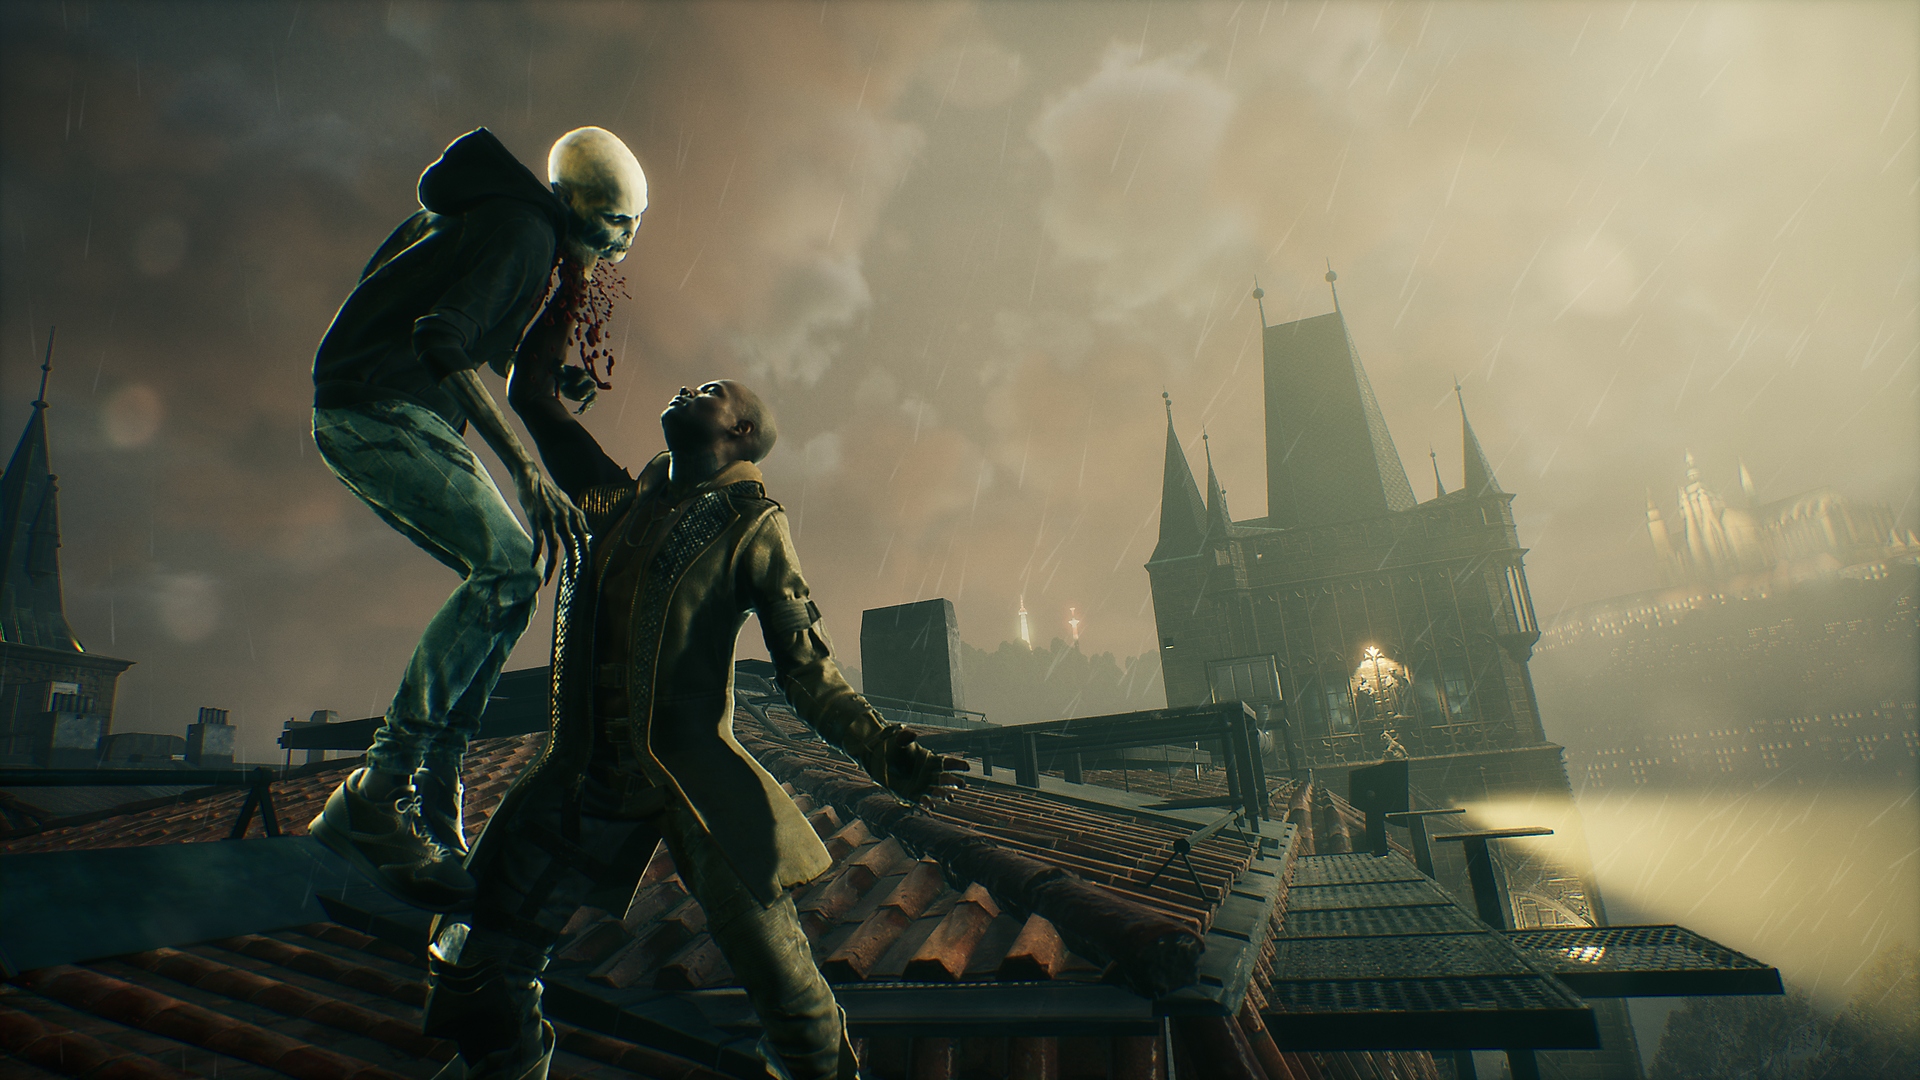 Snimka zaslona igre Bloodhunt koja prikazuje vampire kako stoje na krovu